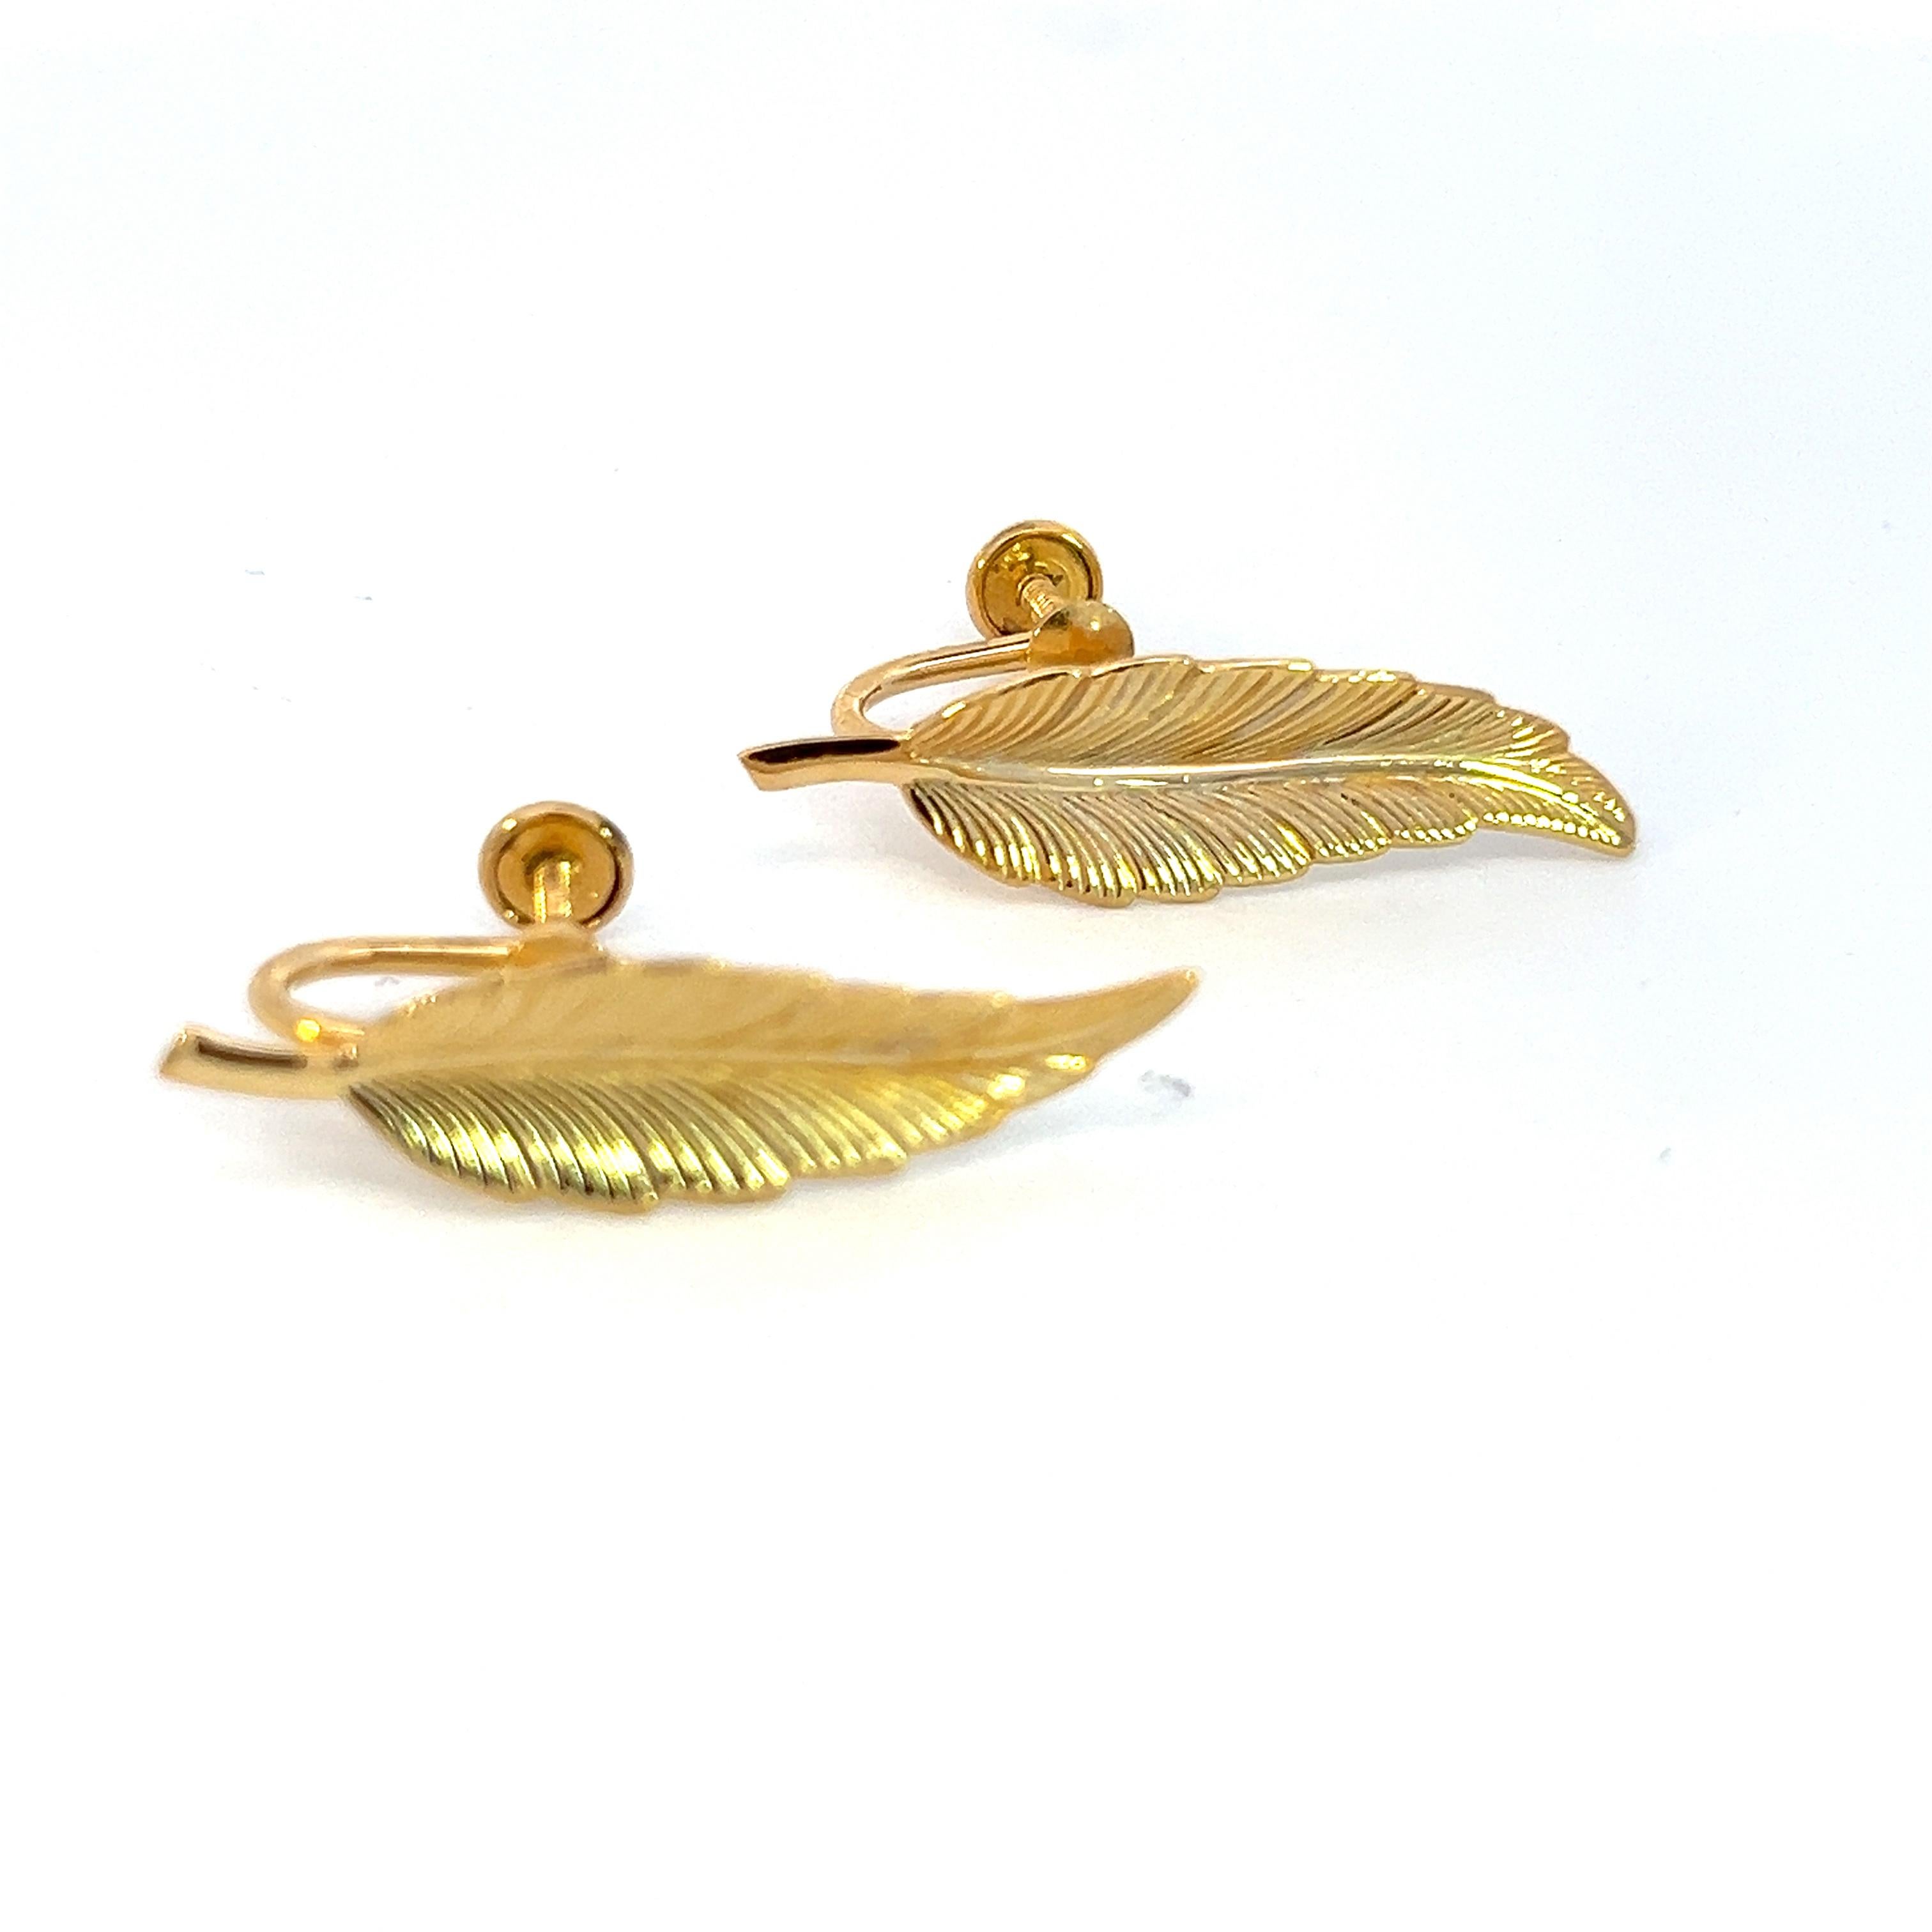 Authentique Tiffany & Co Estate Leaf Earrings Clip-on 14k Gold Plated TIF550

Ces élégantes boucles d'oreilles Tiffany & Co authentiques pèsent 3.6 grammes.

VENDEUR DE CONFIANCE DEPUIS 2002

VEUILLEZ VOIR NOS CENTAINES DE COMMENTAIRES POSITIFS DE